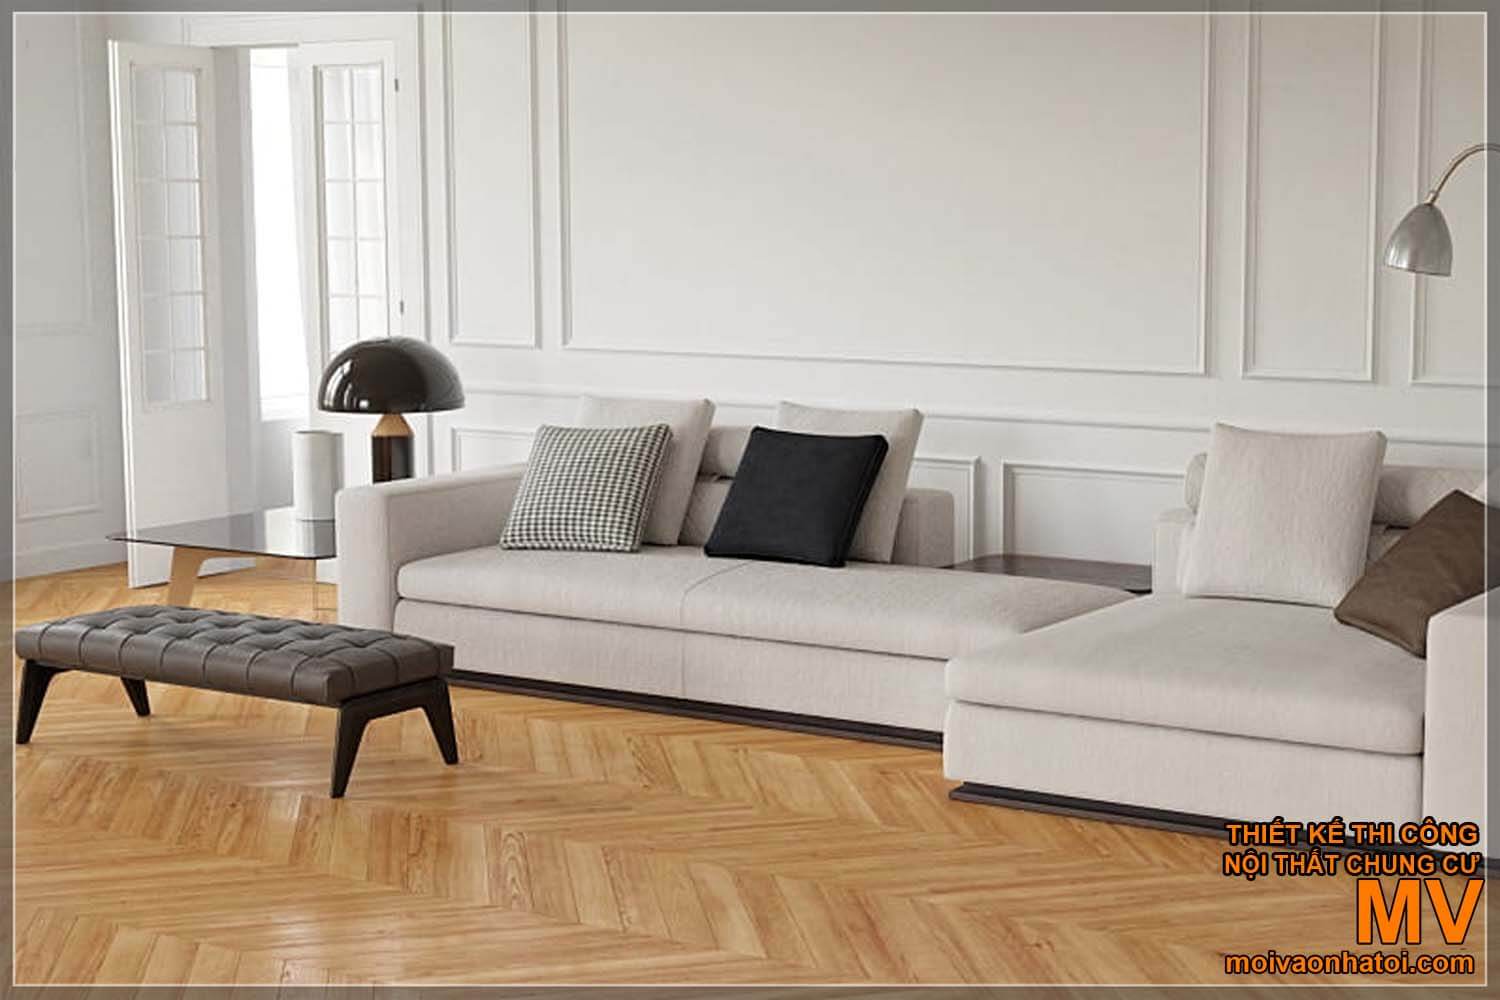 model sofa modern dan sederhana untuk rumah neoklasik